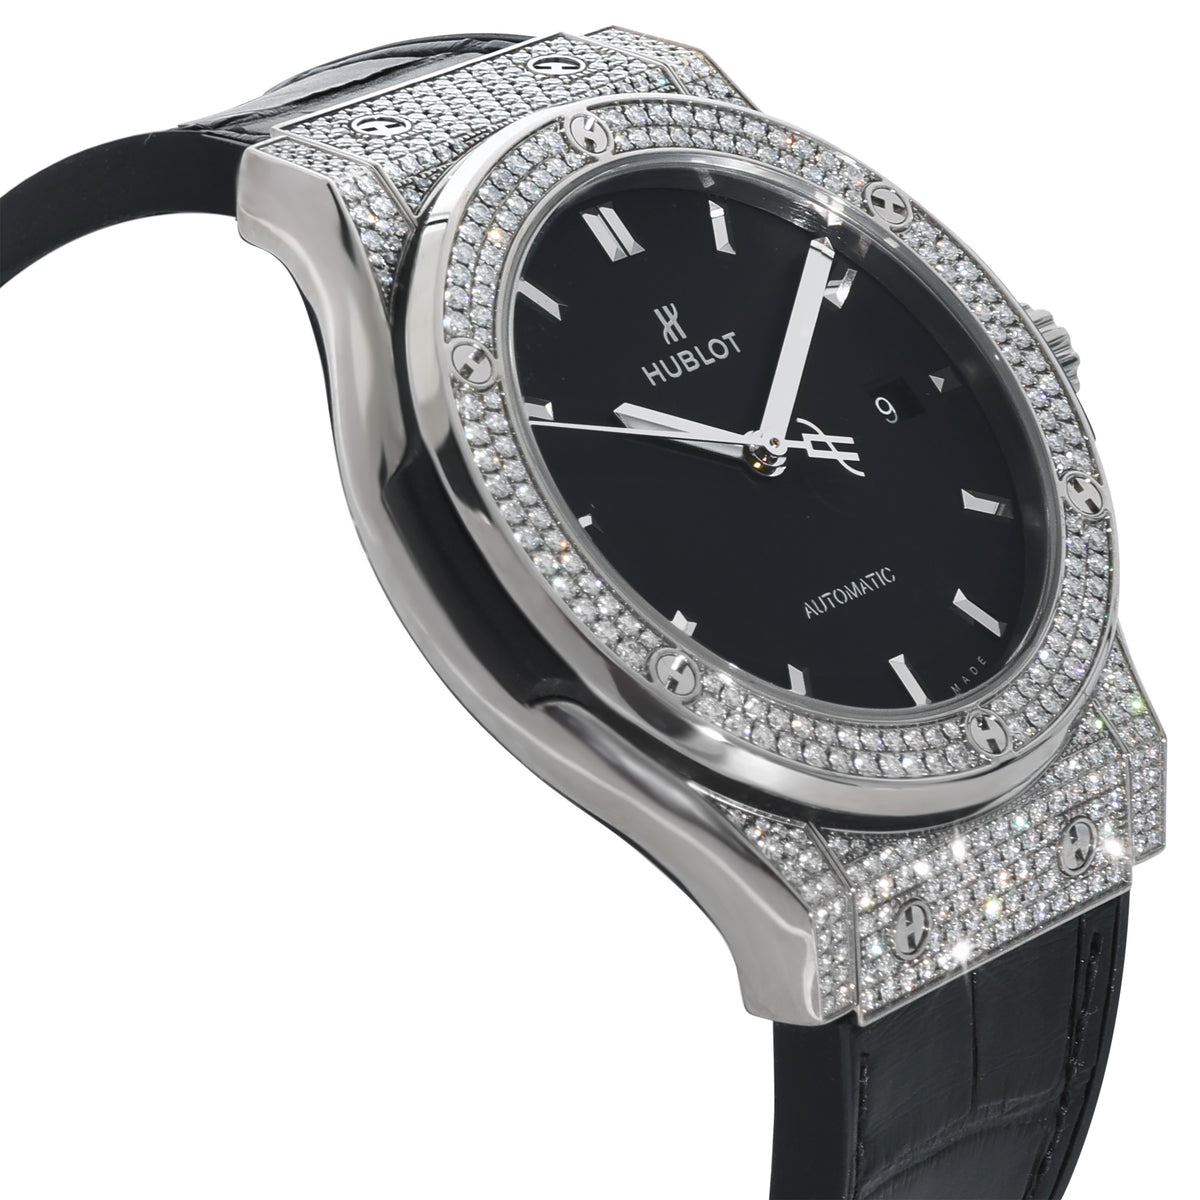 Classic Fusion 542.NX.1171.LR.1704 Unisex Watch in Titanium